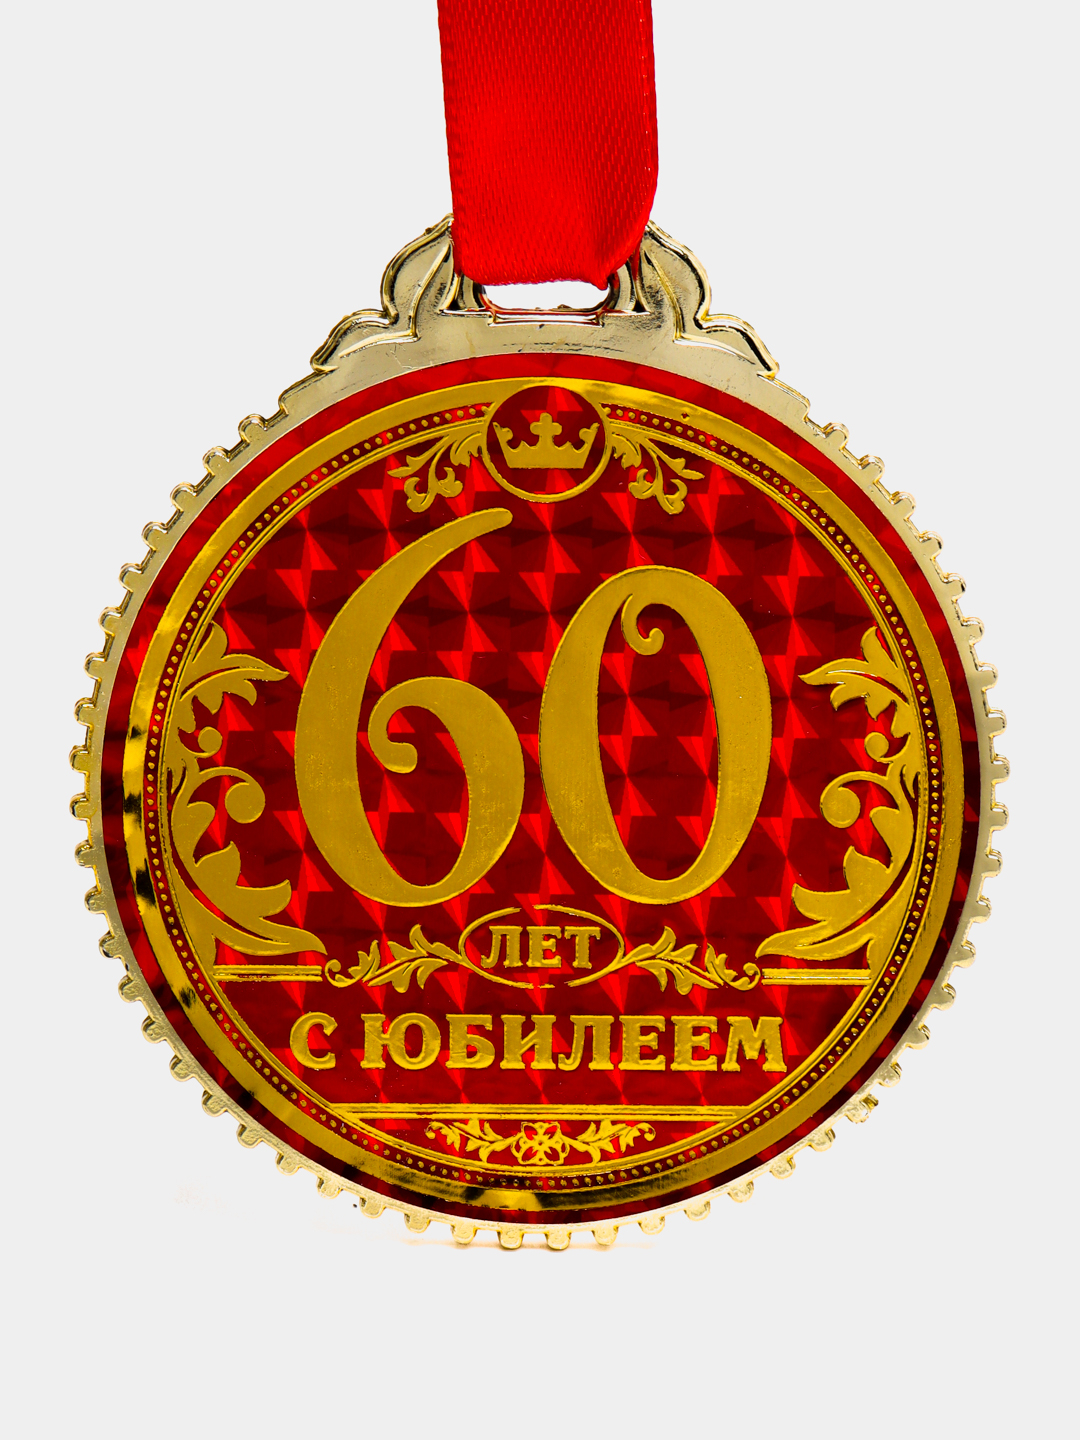 Продажа медалей на свадьбу, юбилей или день рождения в интернет-магазине вороковский.рф